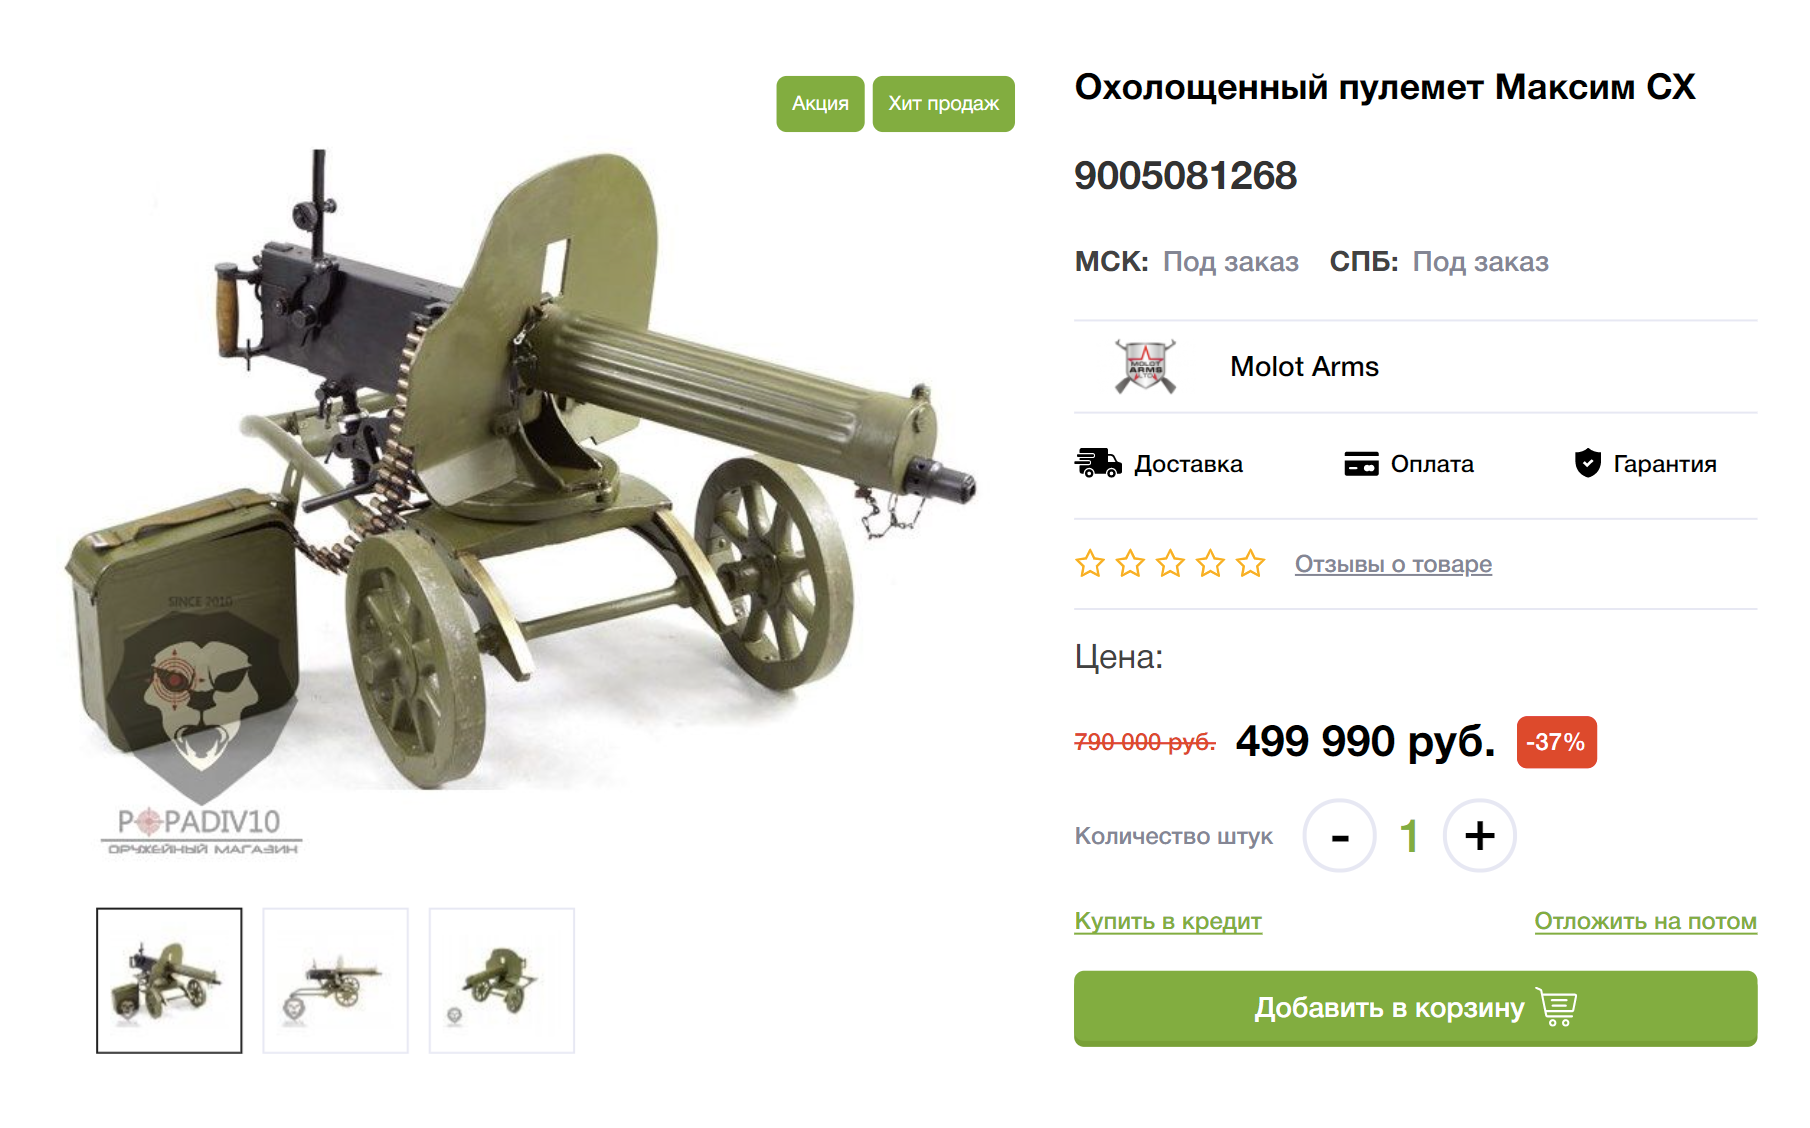 А пулемет «Максим» — почти полмиллиона рублей. Его обычно приобретают коллекционеры — многие экземпляры вполне могли участвовать в боевых действиях